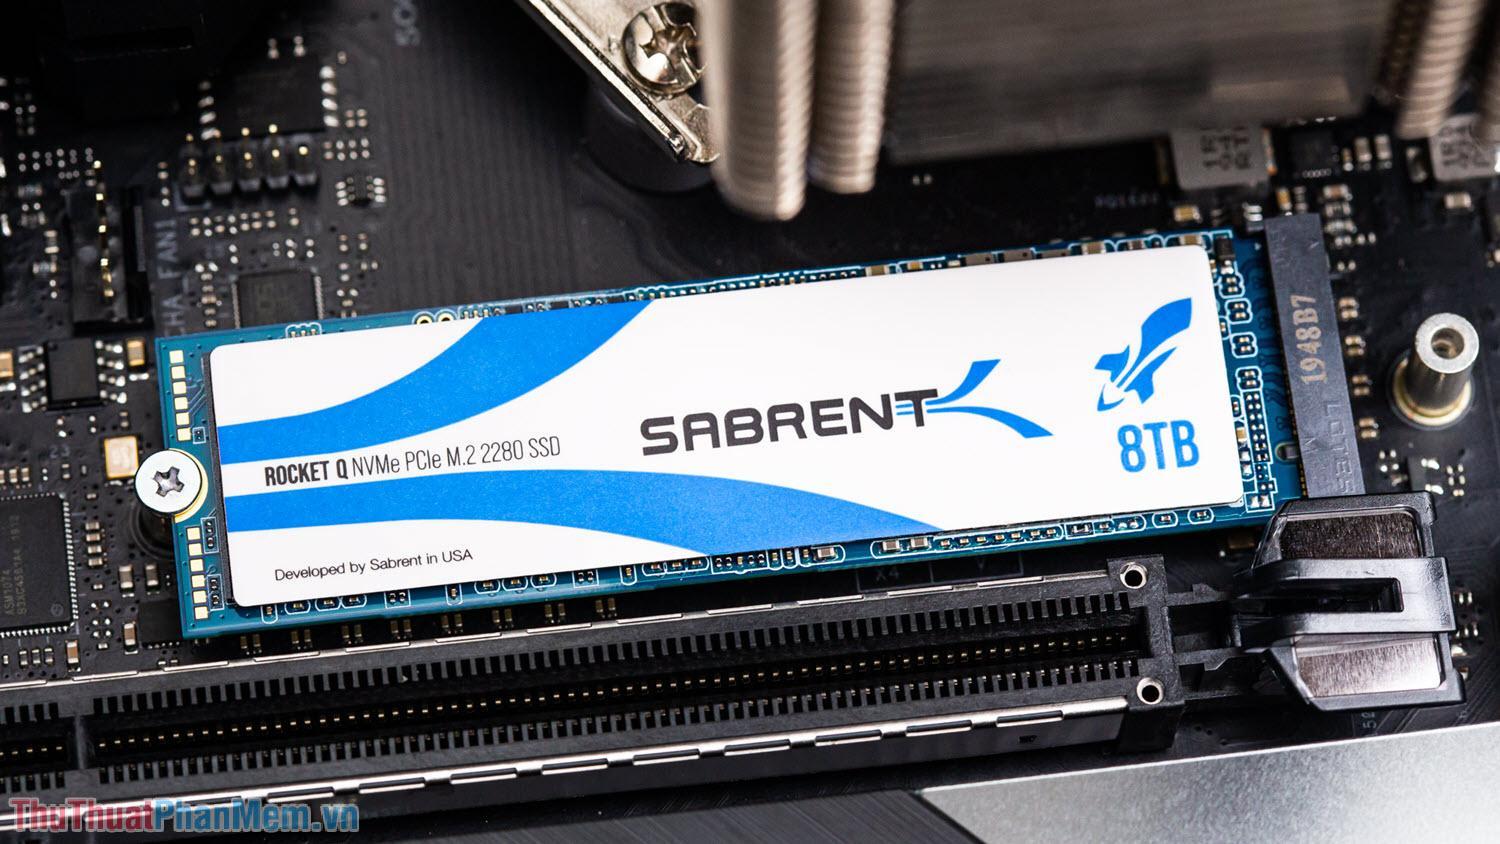 Sabrent Rocket Q 8TB – SSD có dung lượng lớn nhất thế giới